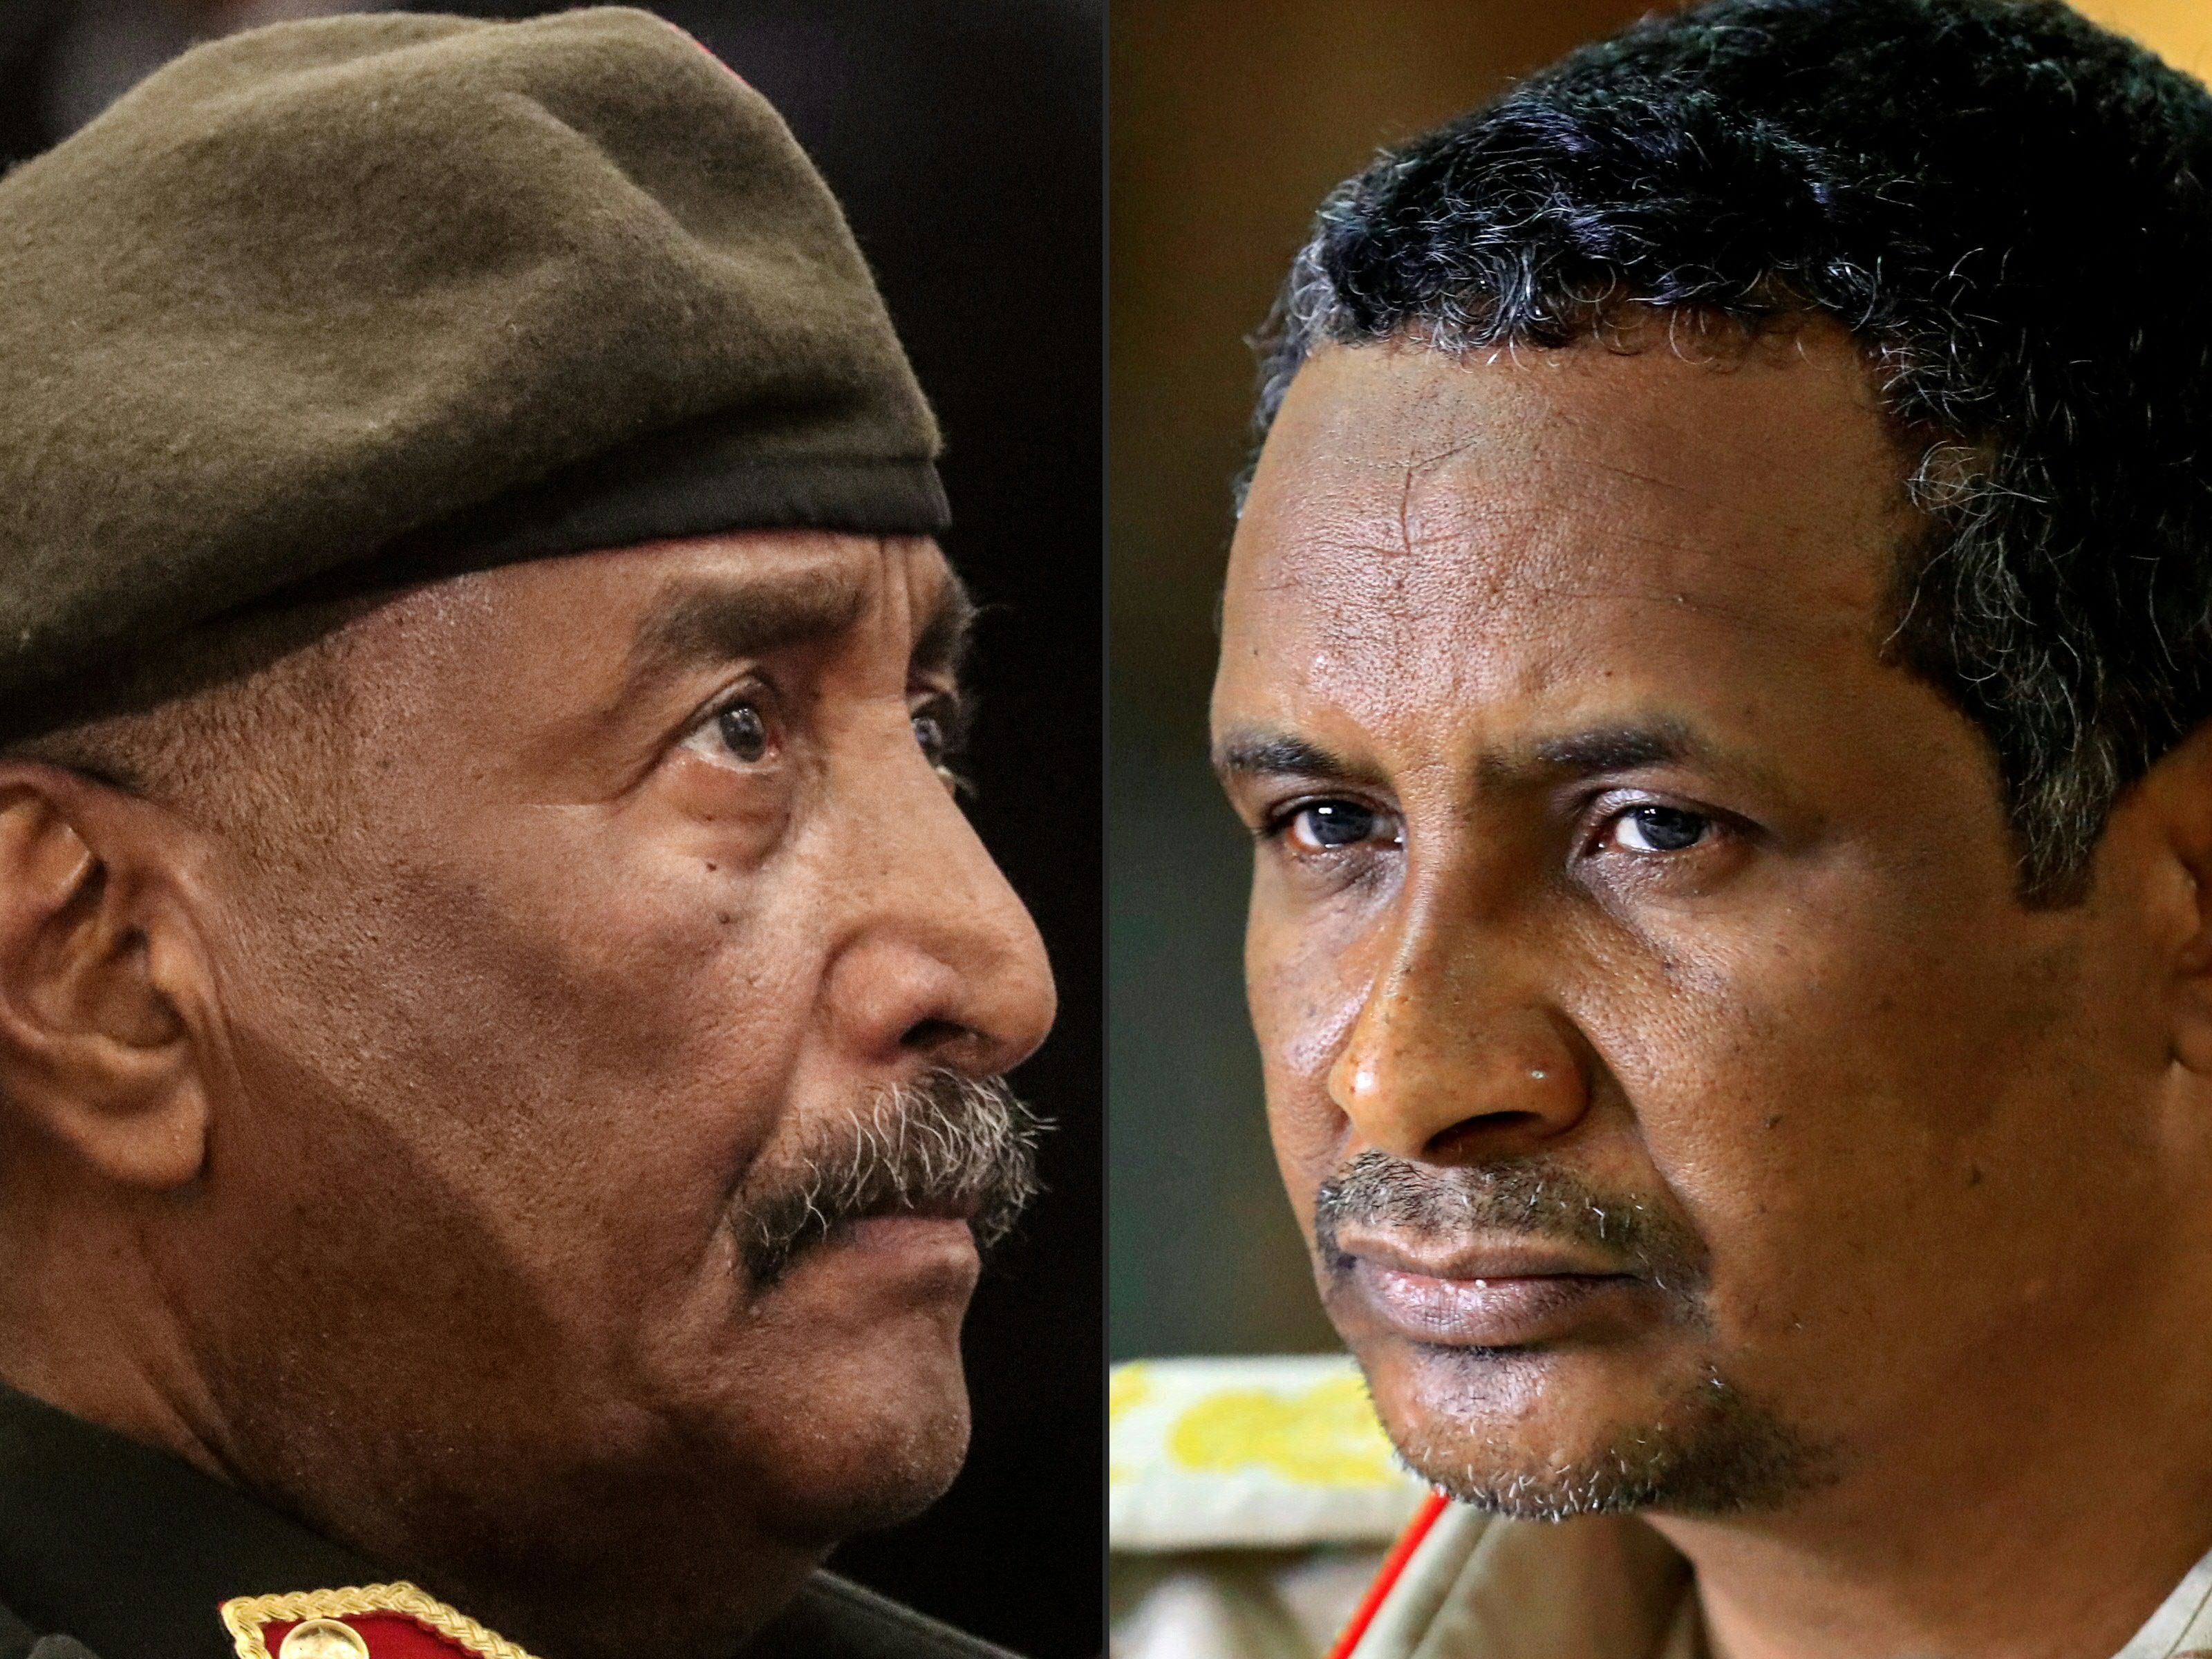 El jefe del ejército de Sudán, Abdel Fattah al-Burhan (izq.), y el comandante de las Fuerzas de Apoyo Rápido paramilitares de Sudán, el general Mohamed Hamdan Daglo (Hemedti), protagonistas del conflicto en Sudán.